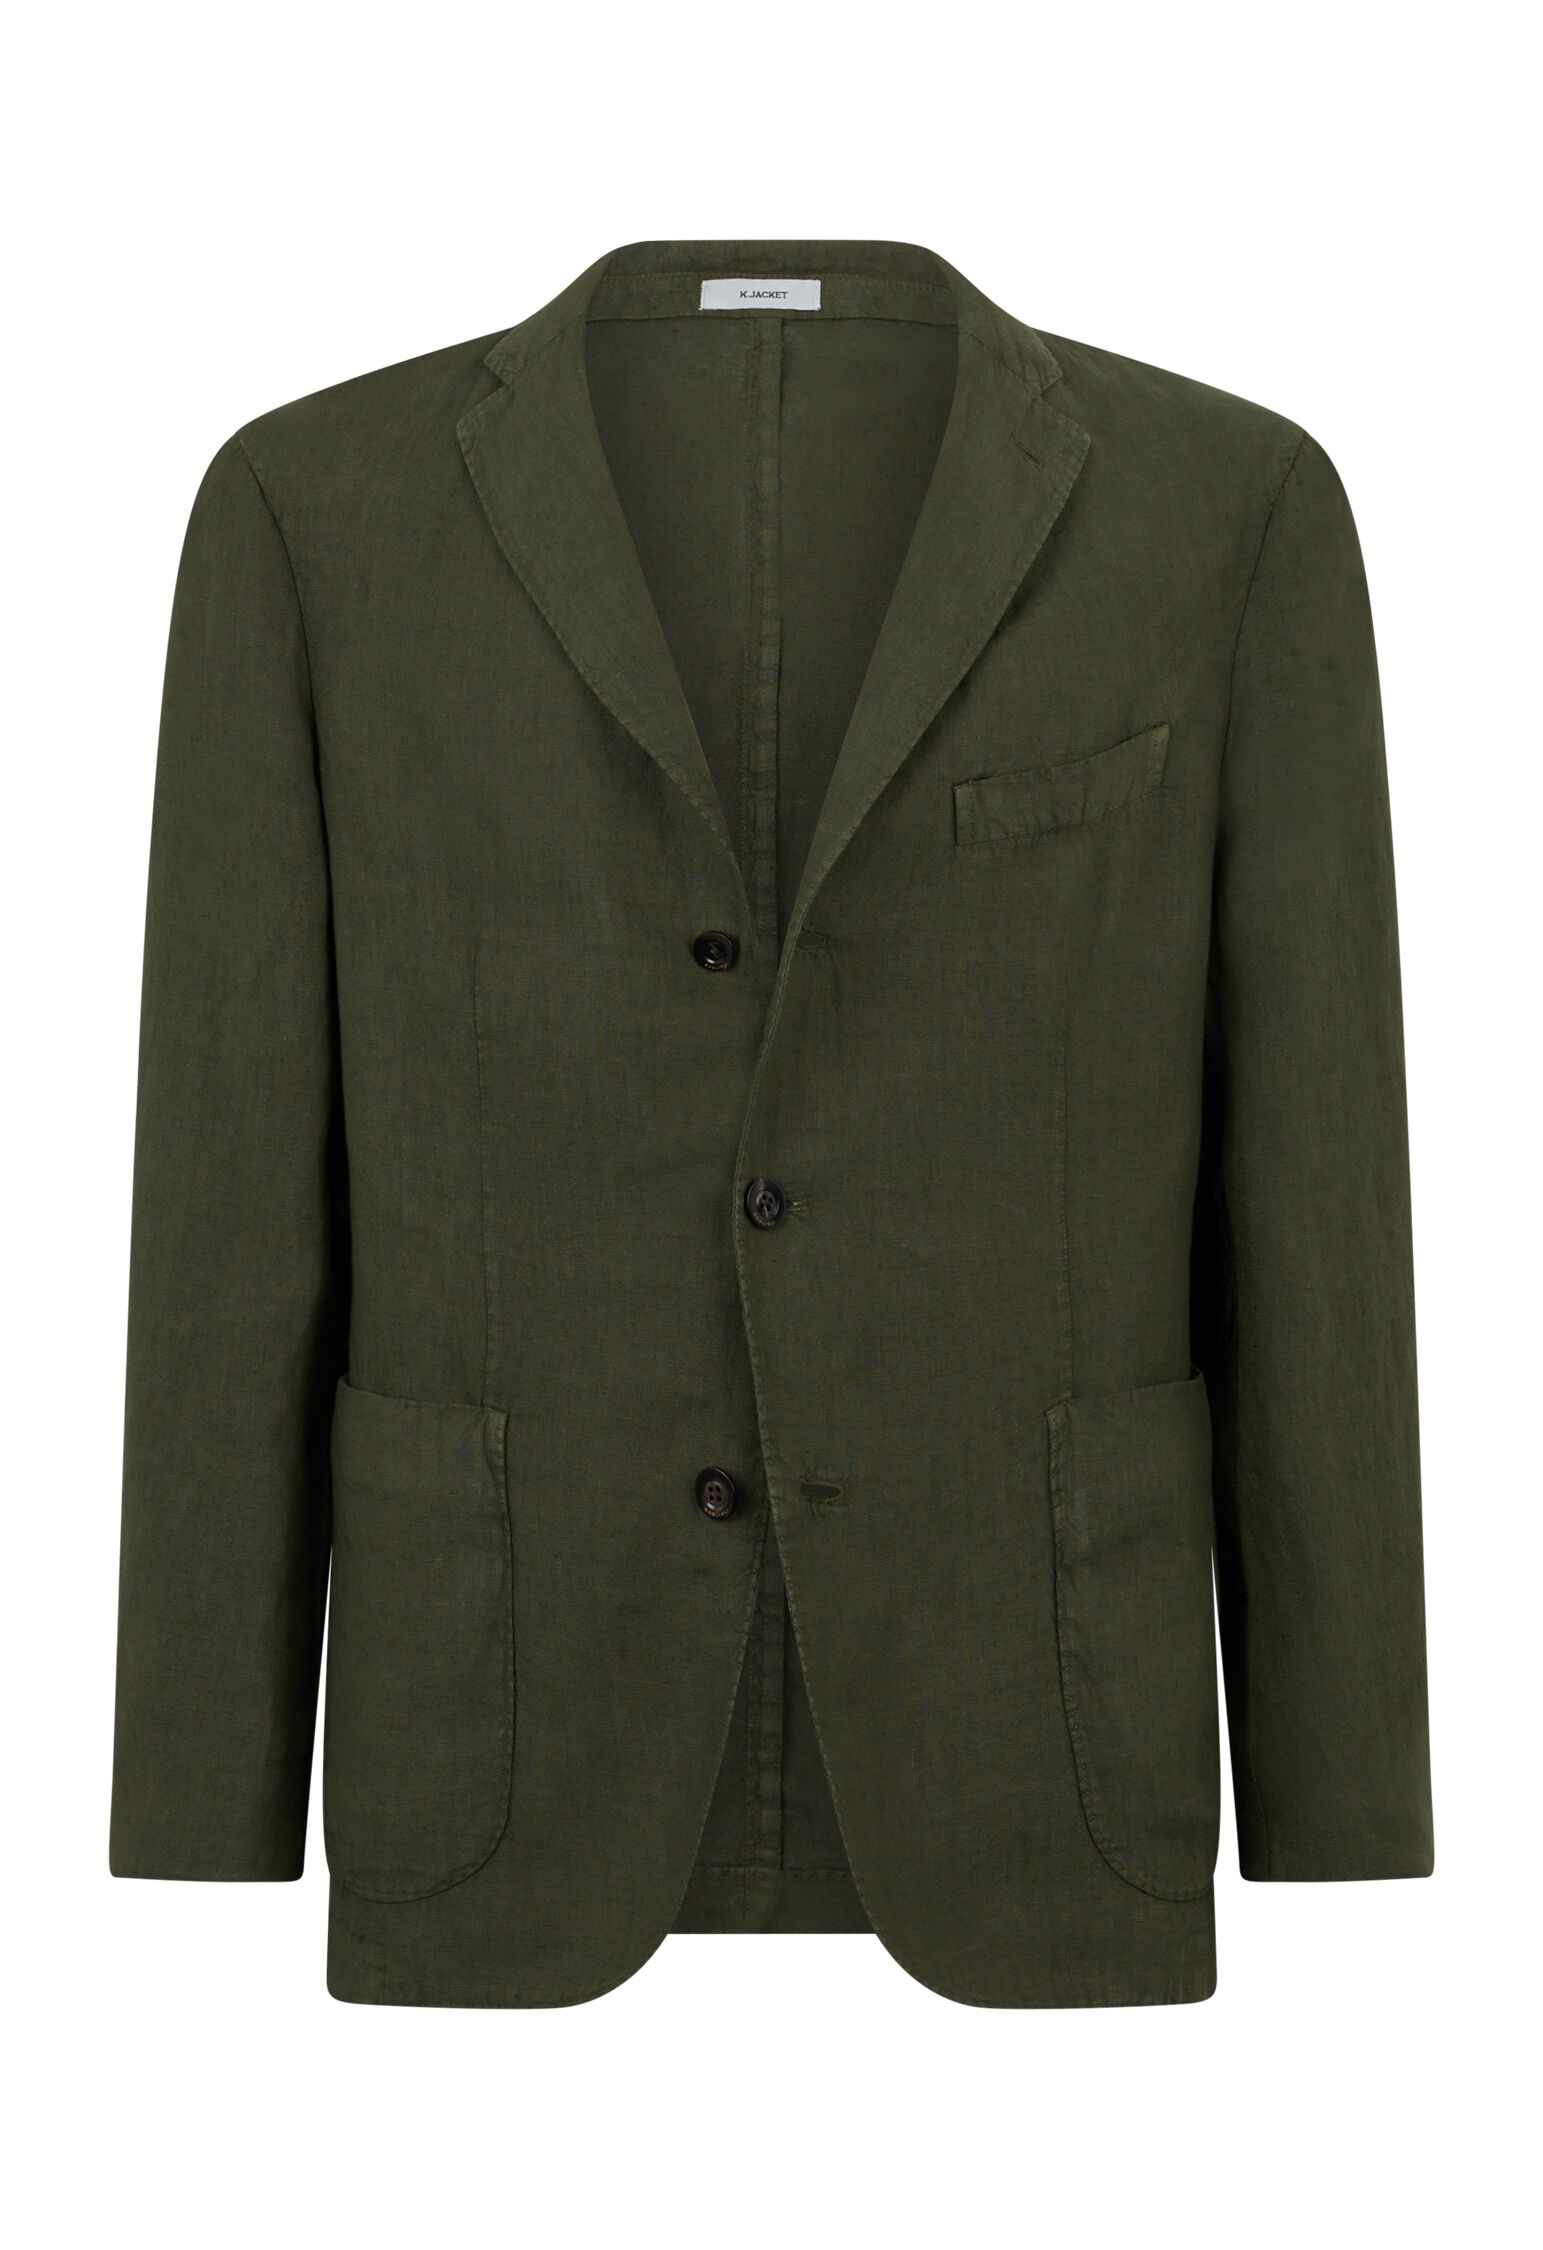 Garment-dyed Linen K-Jacket